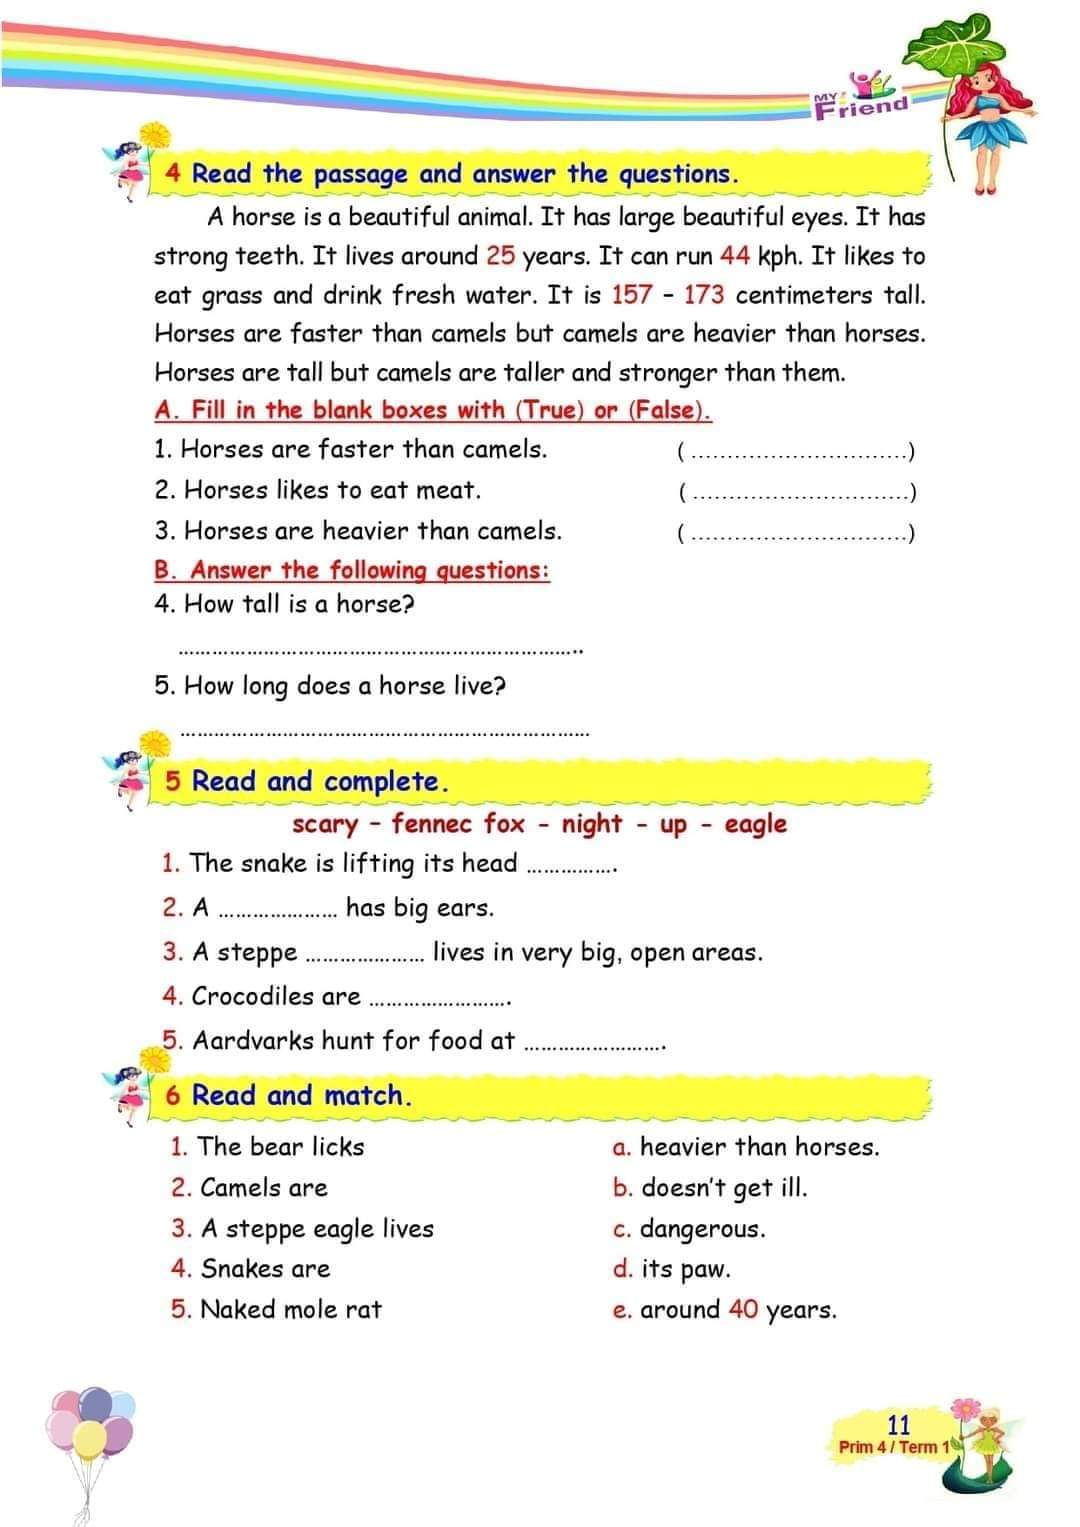 قواعد وتدريبات انجليزي رابعة ابتدائي ٢٠٢٢ - اللغة الانجليزية